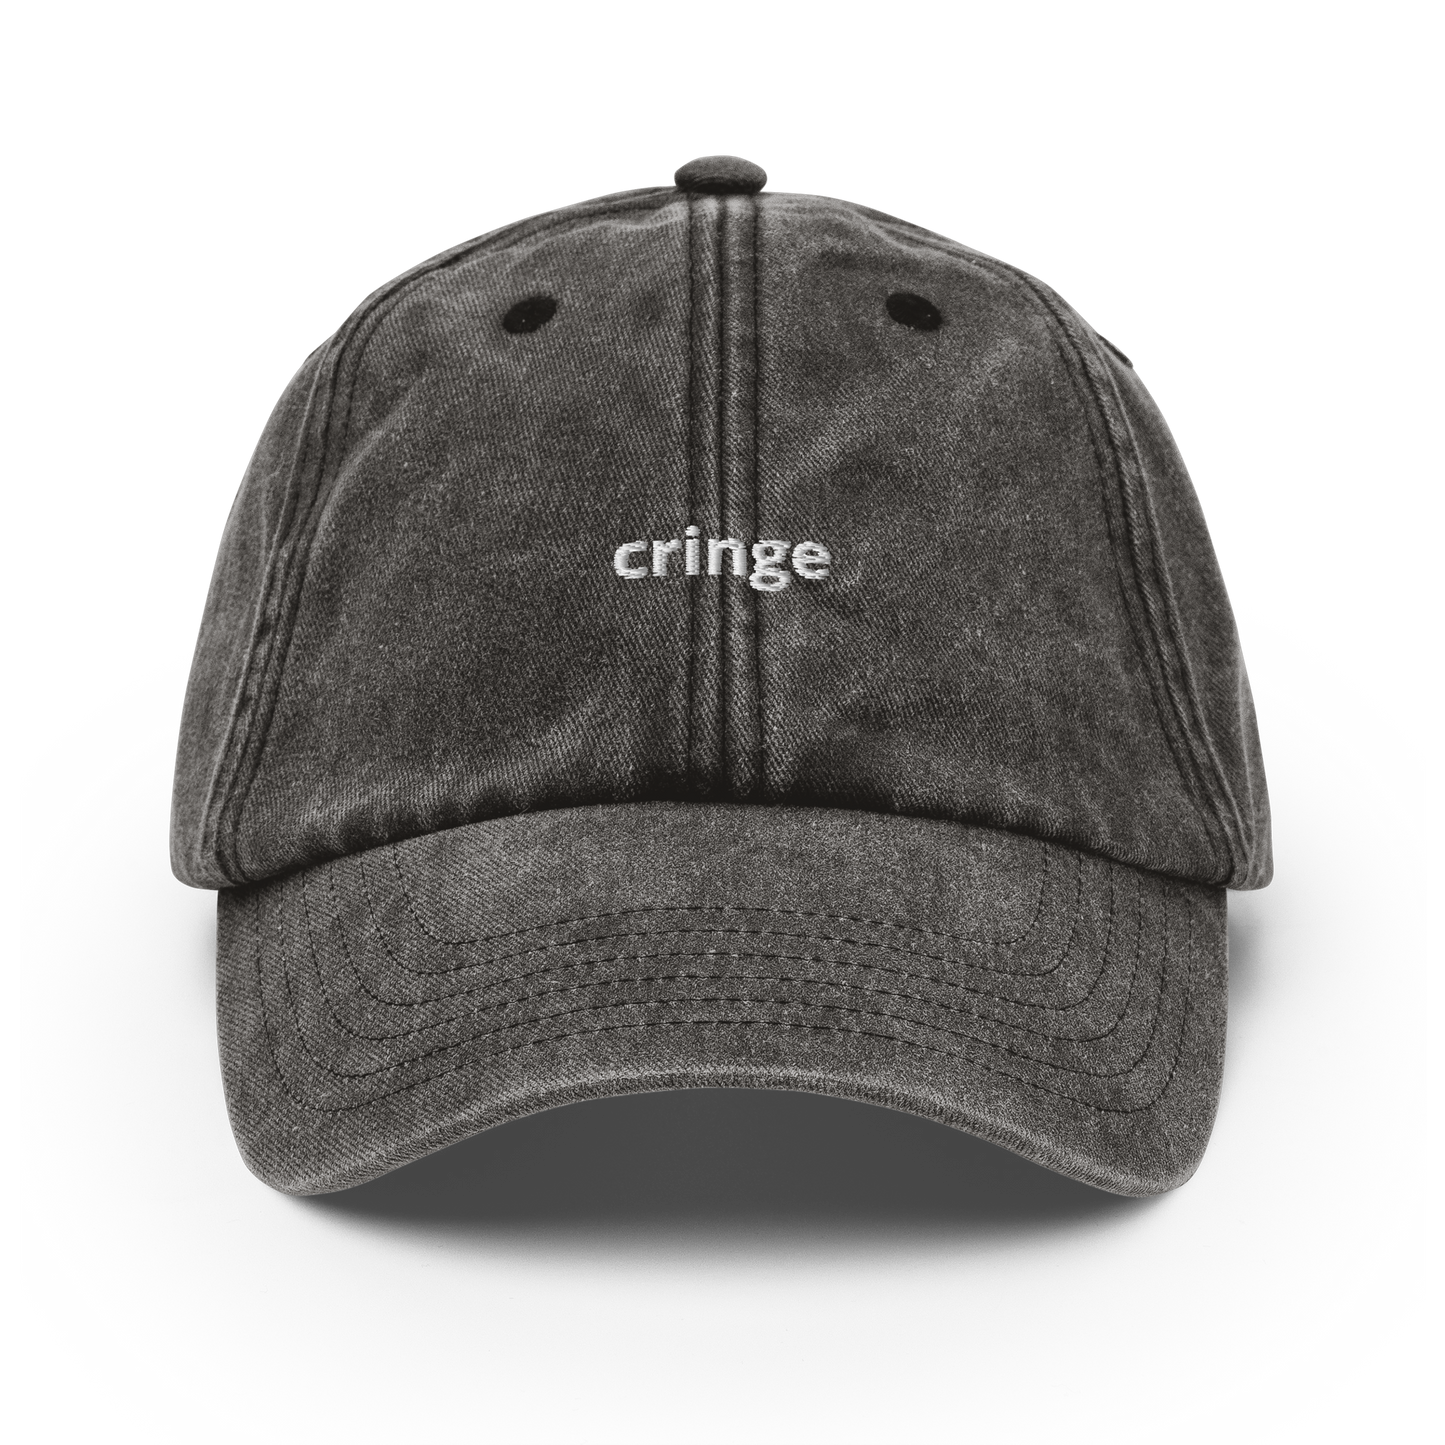 Cringe - Vintage Hat